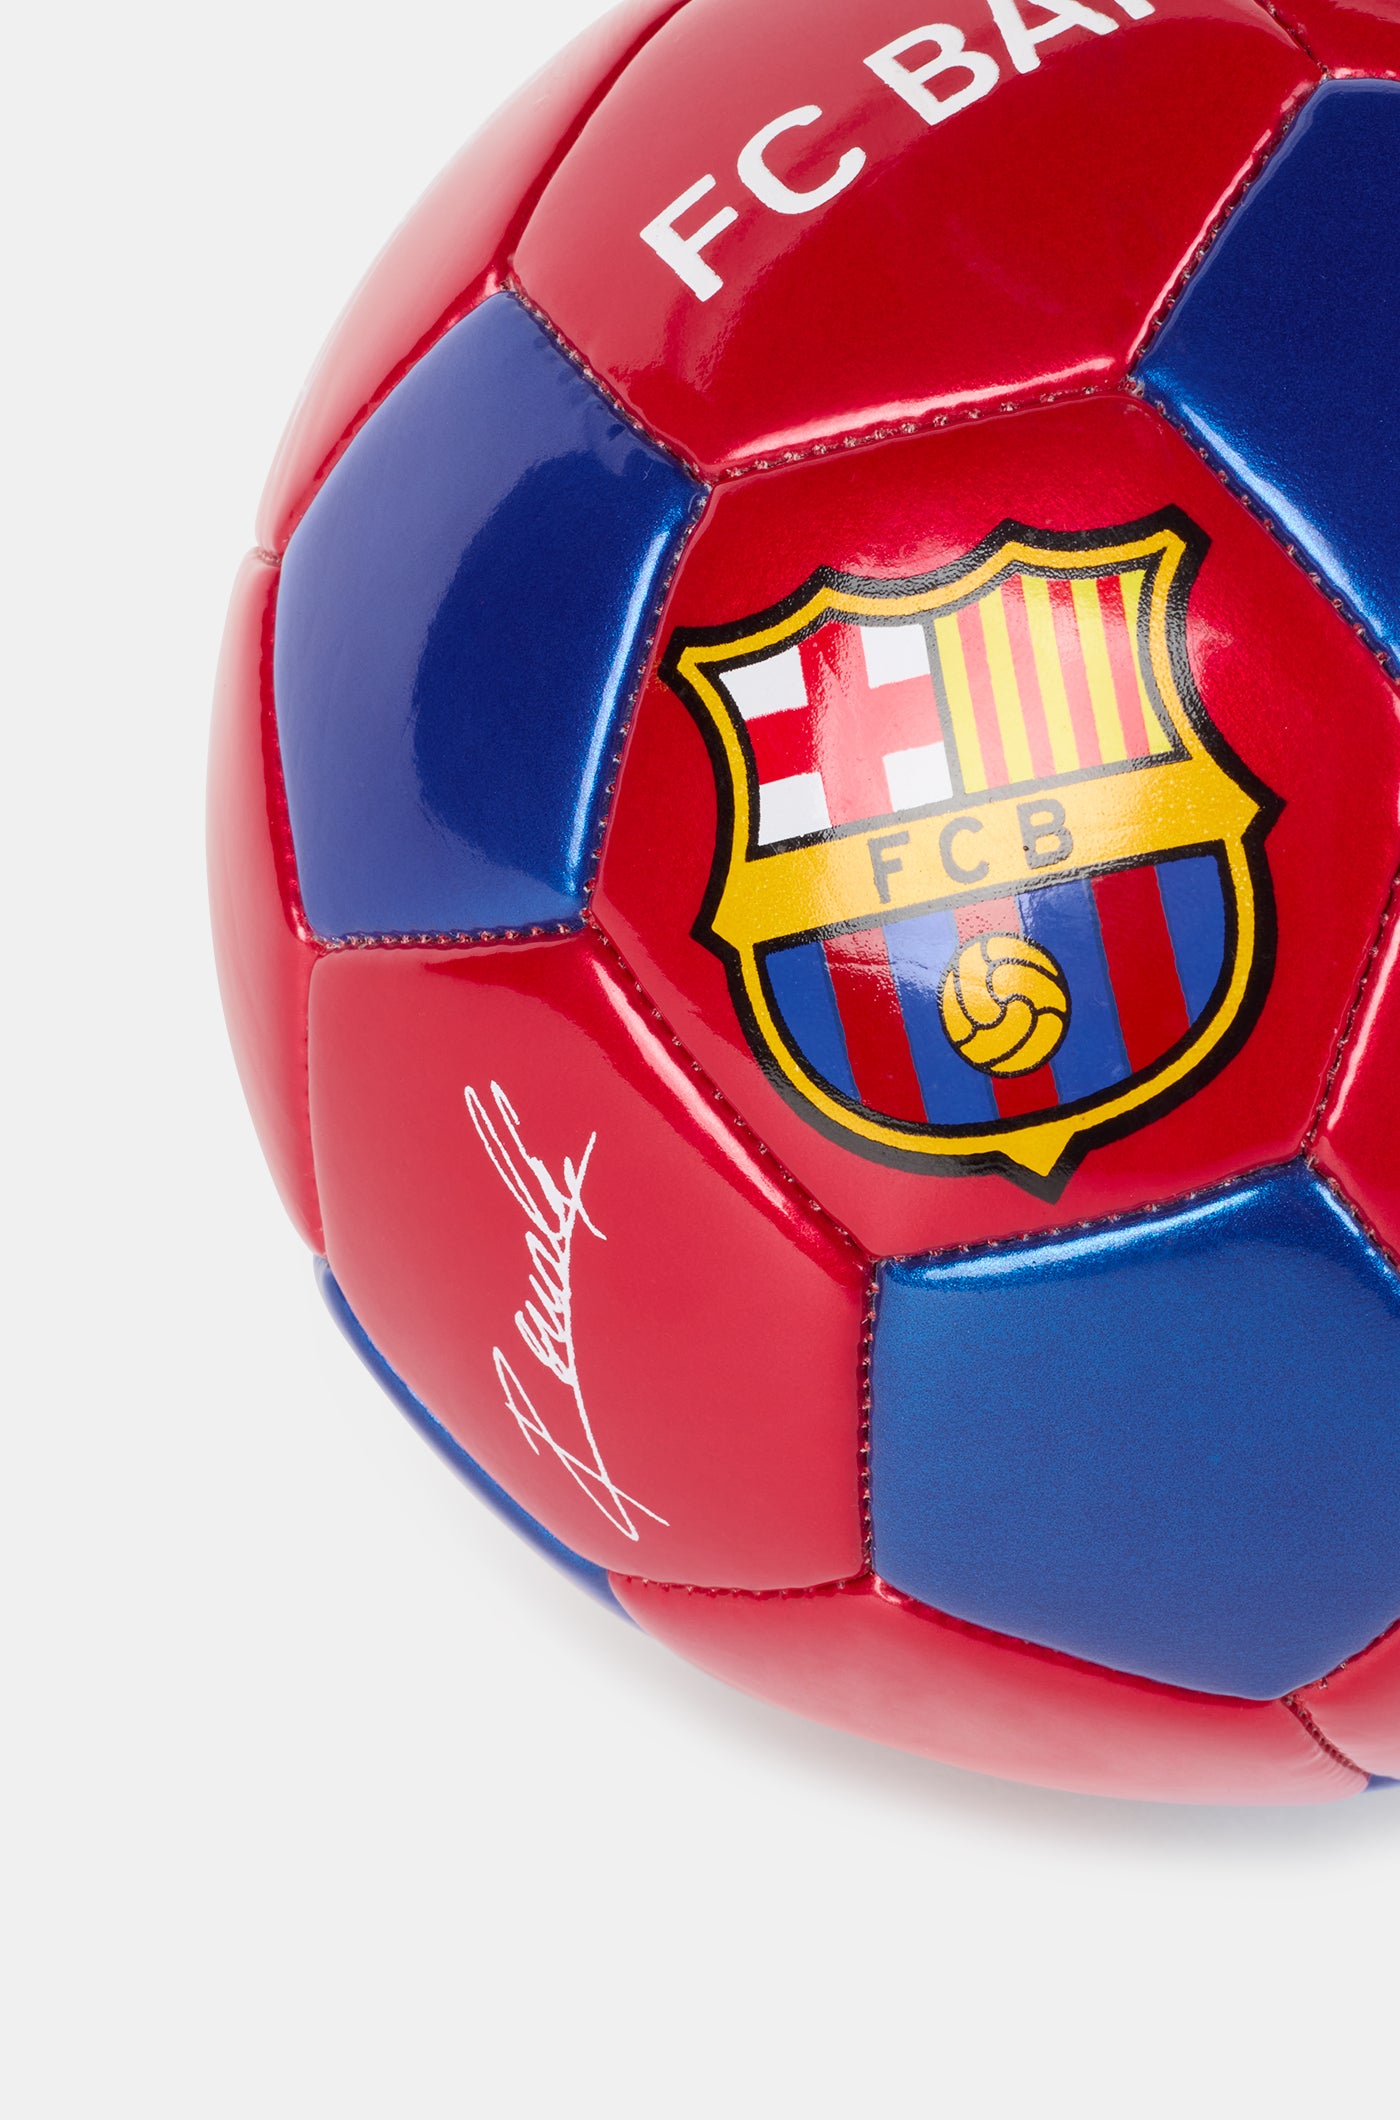 Ballon FC Barcelone - Mini